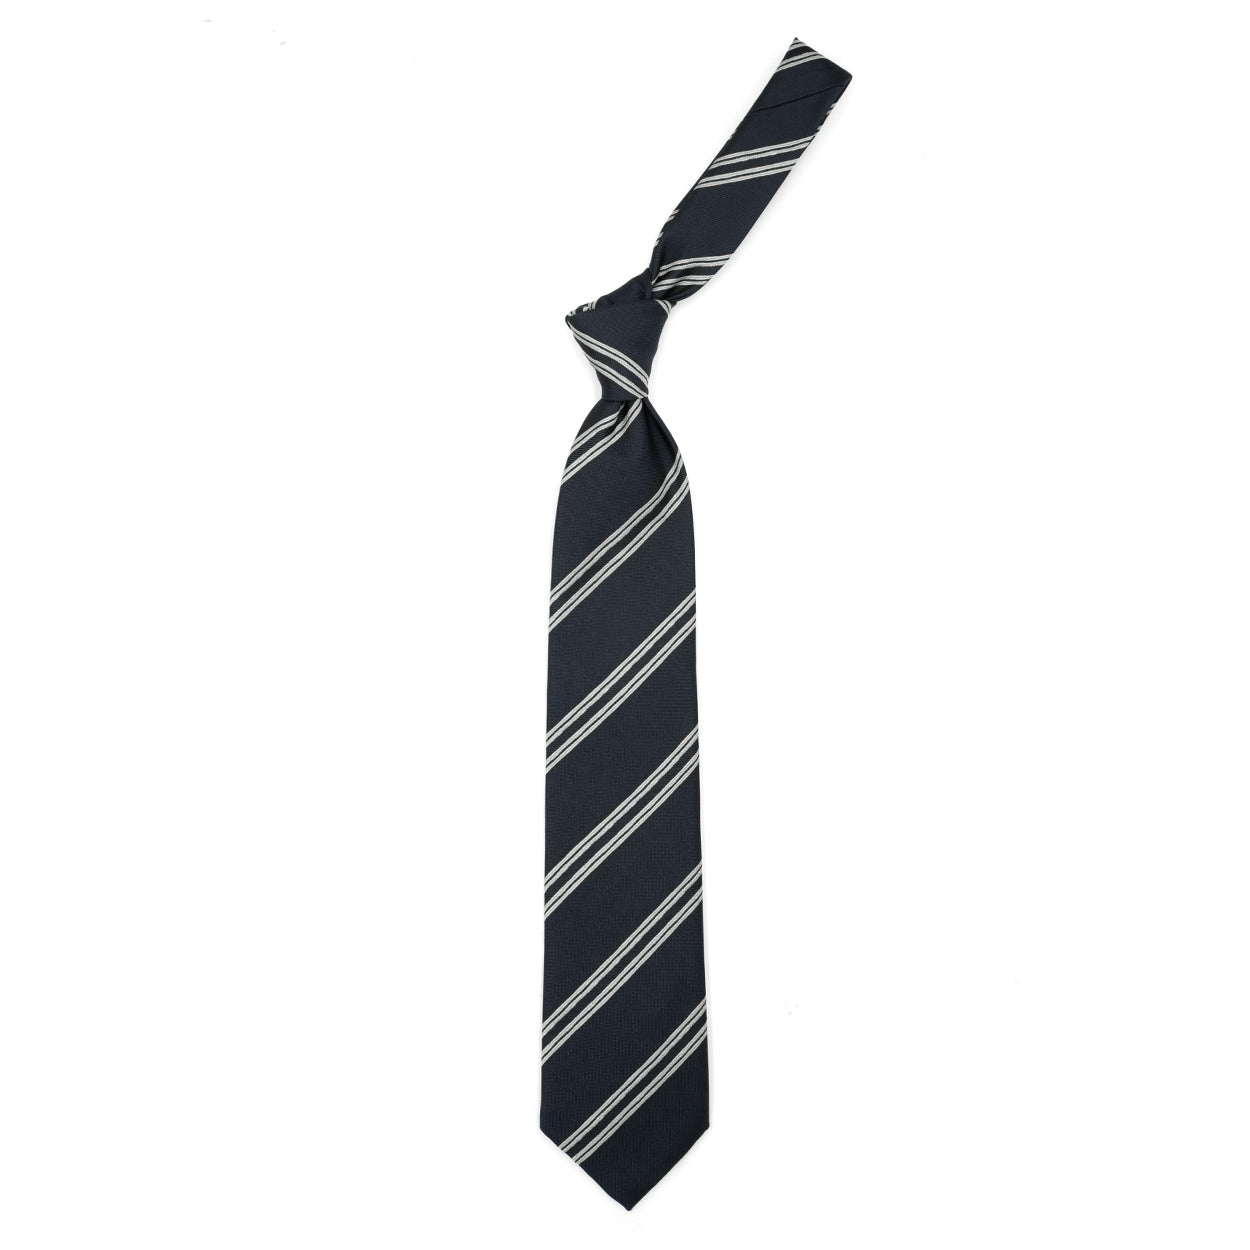 Cravatta nera con righe grigie